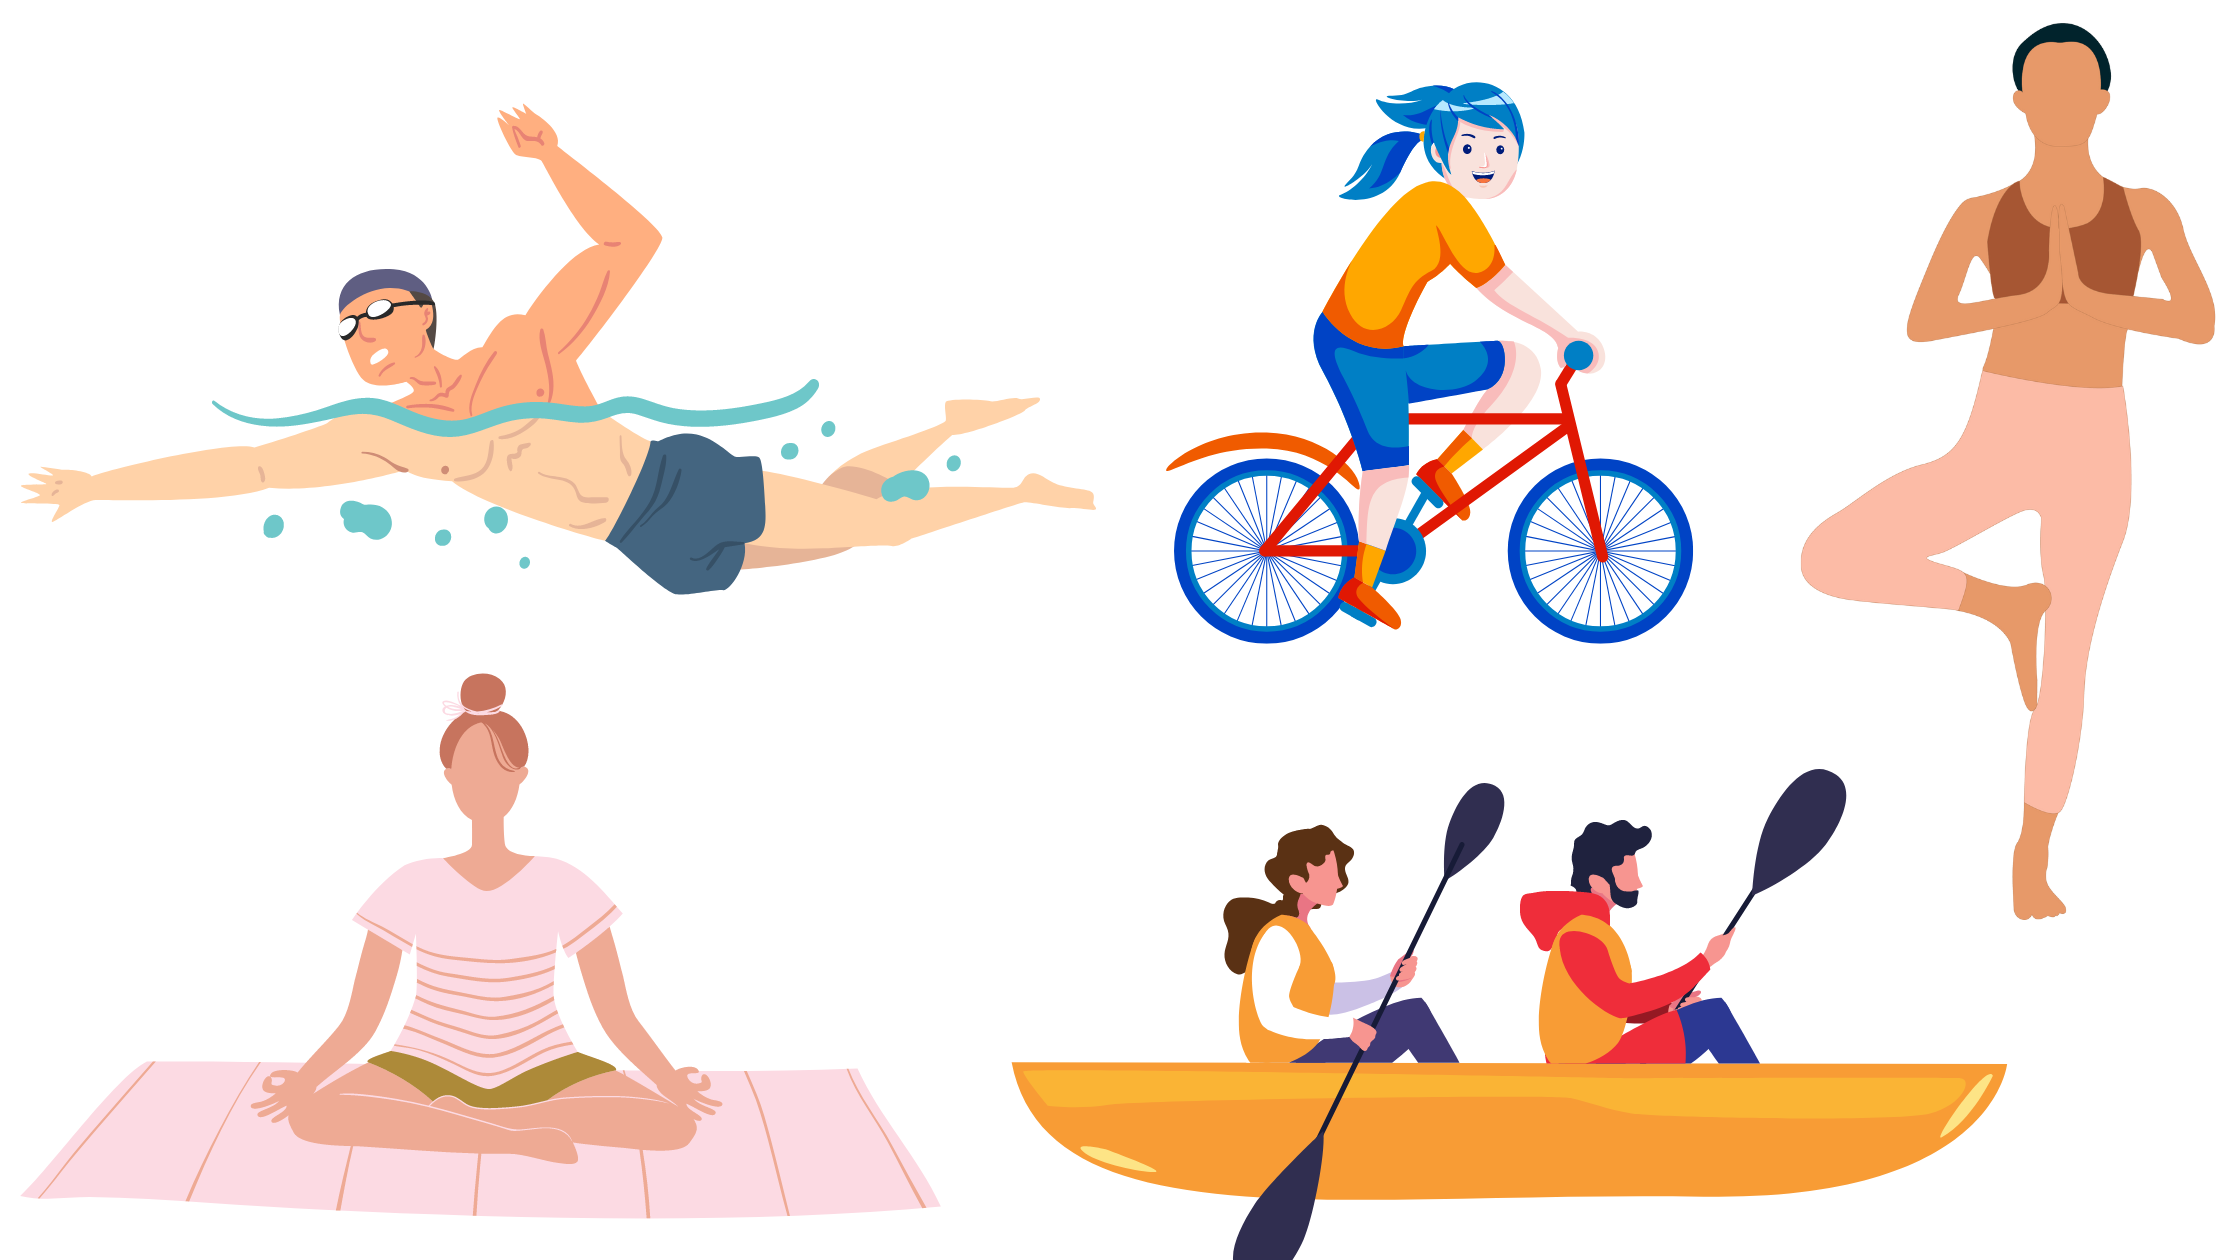 alcune attività consentite anche in presenza di spondilolistesi sono il nuoto a stile libero, il ciclismo, la canoa, pilates e yoga